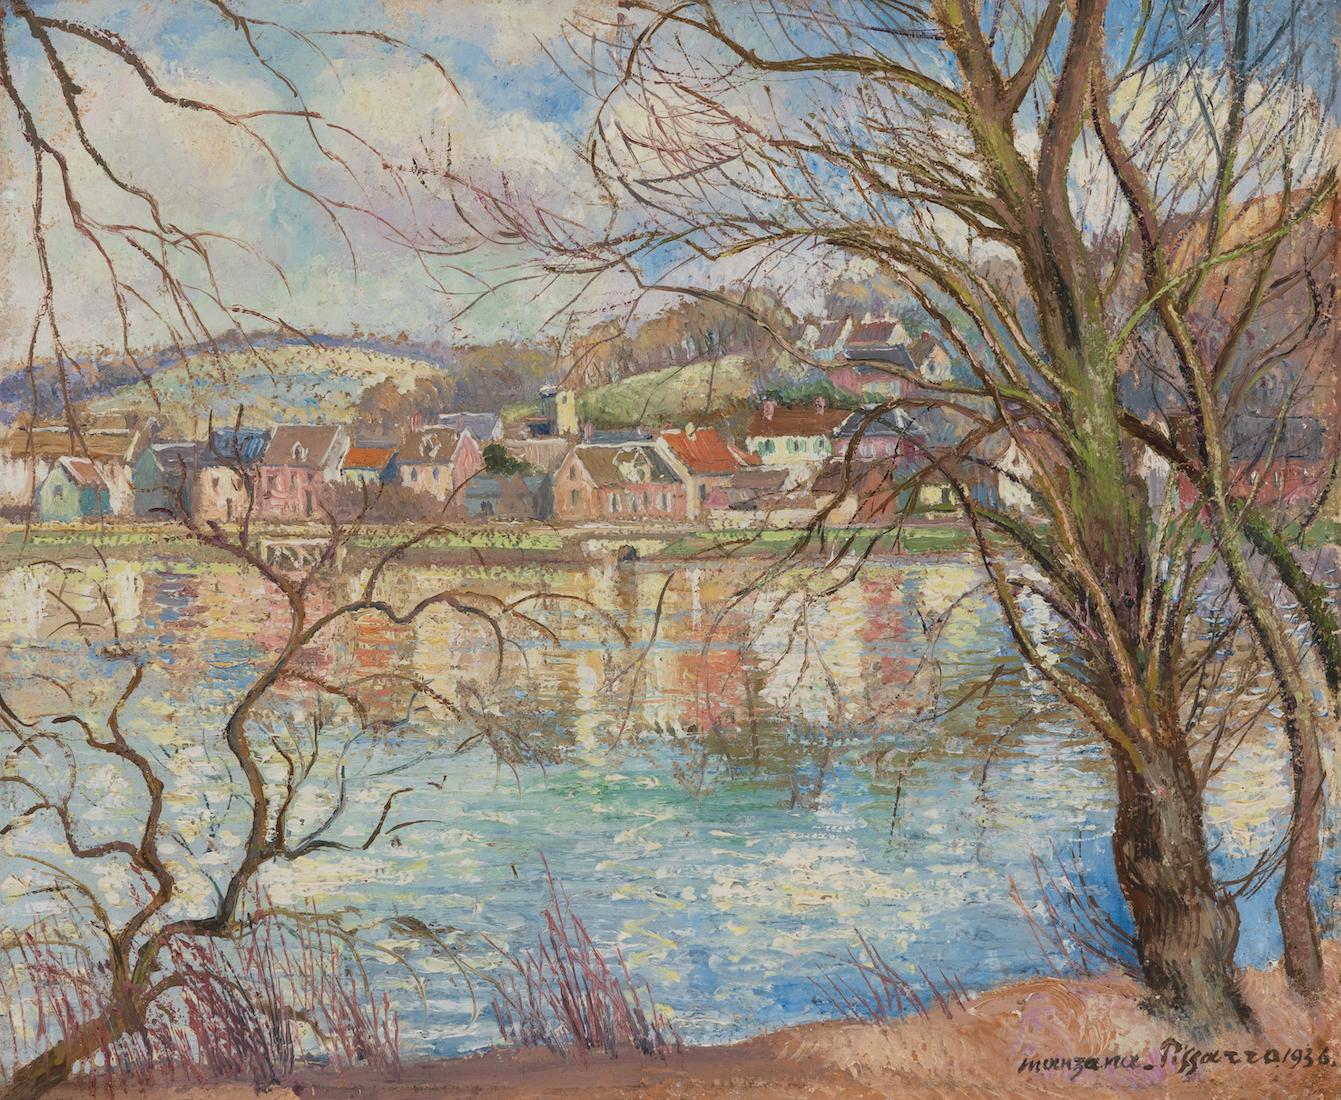 Les Reflets dans l'Eau by Georges Manzana Pissarro - River scene painting